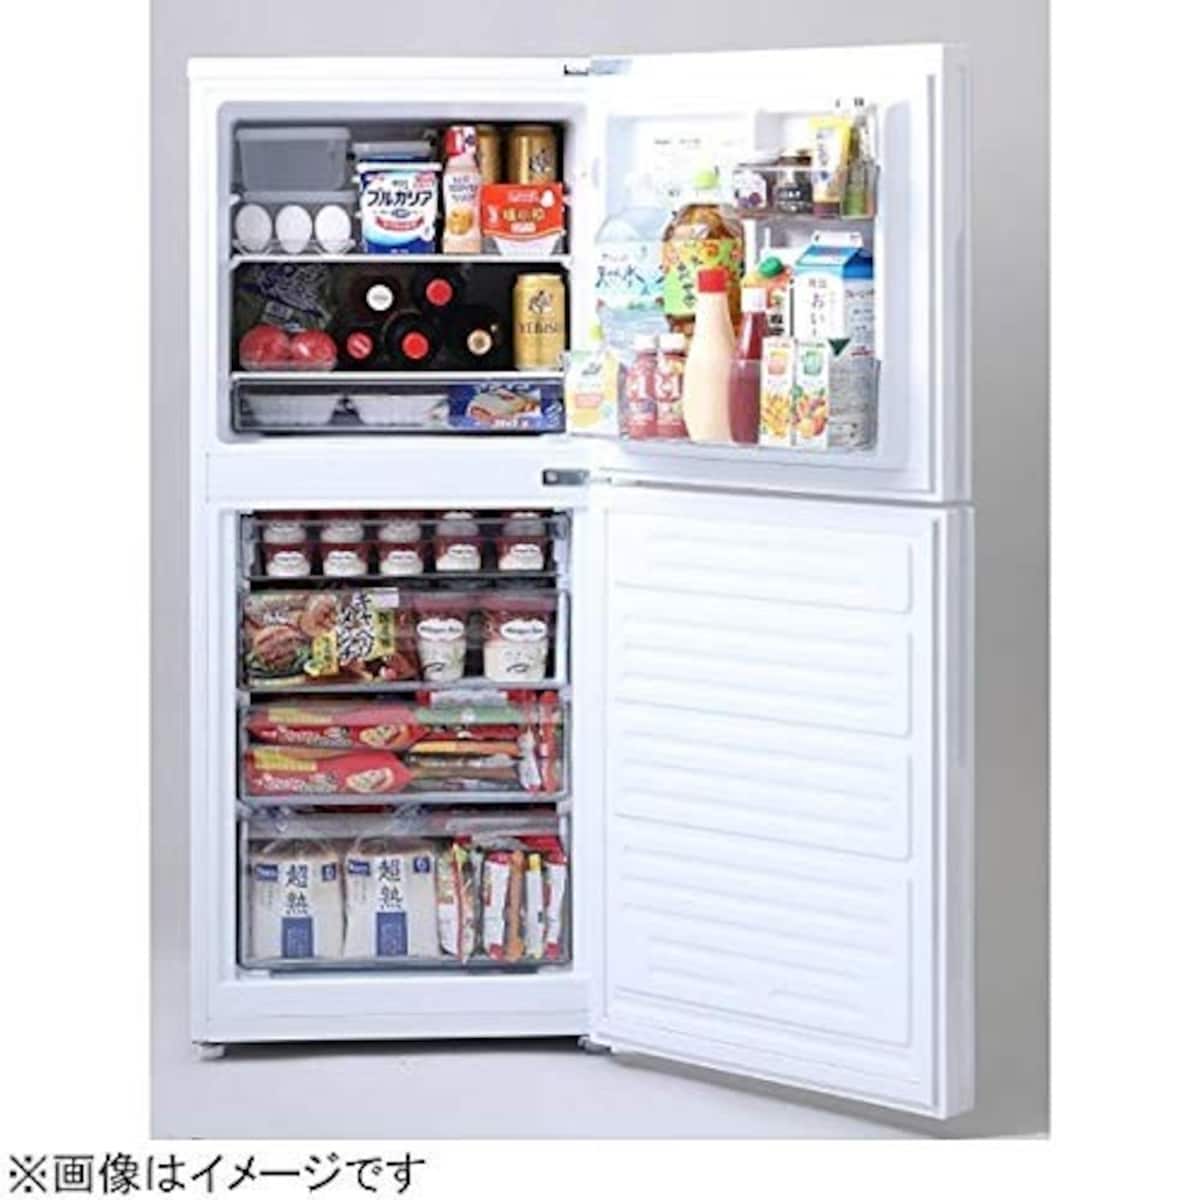  2ドア冷凍冷蔵庫 ハーフ&ハーフ画像2 